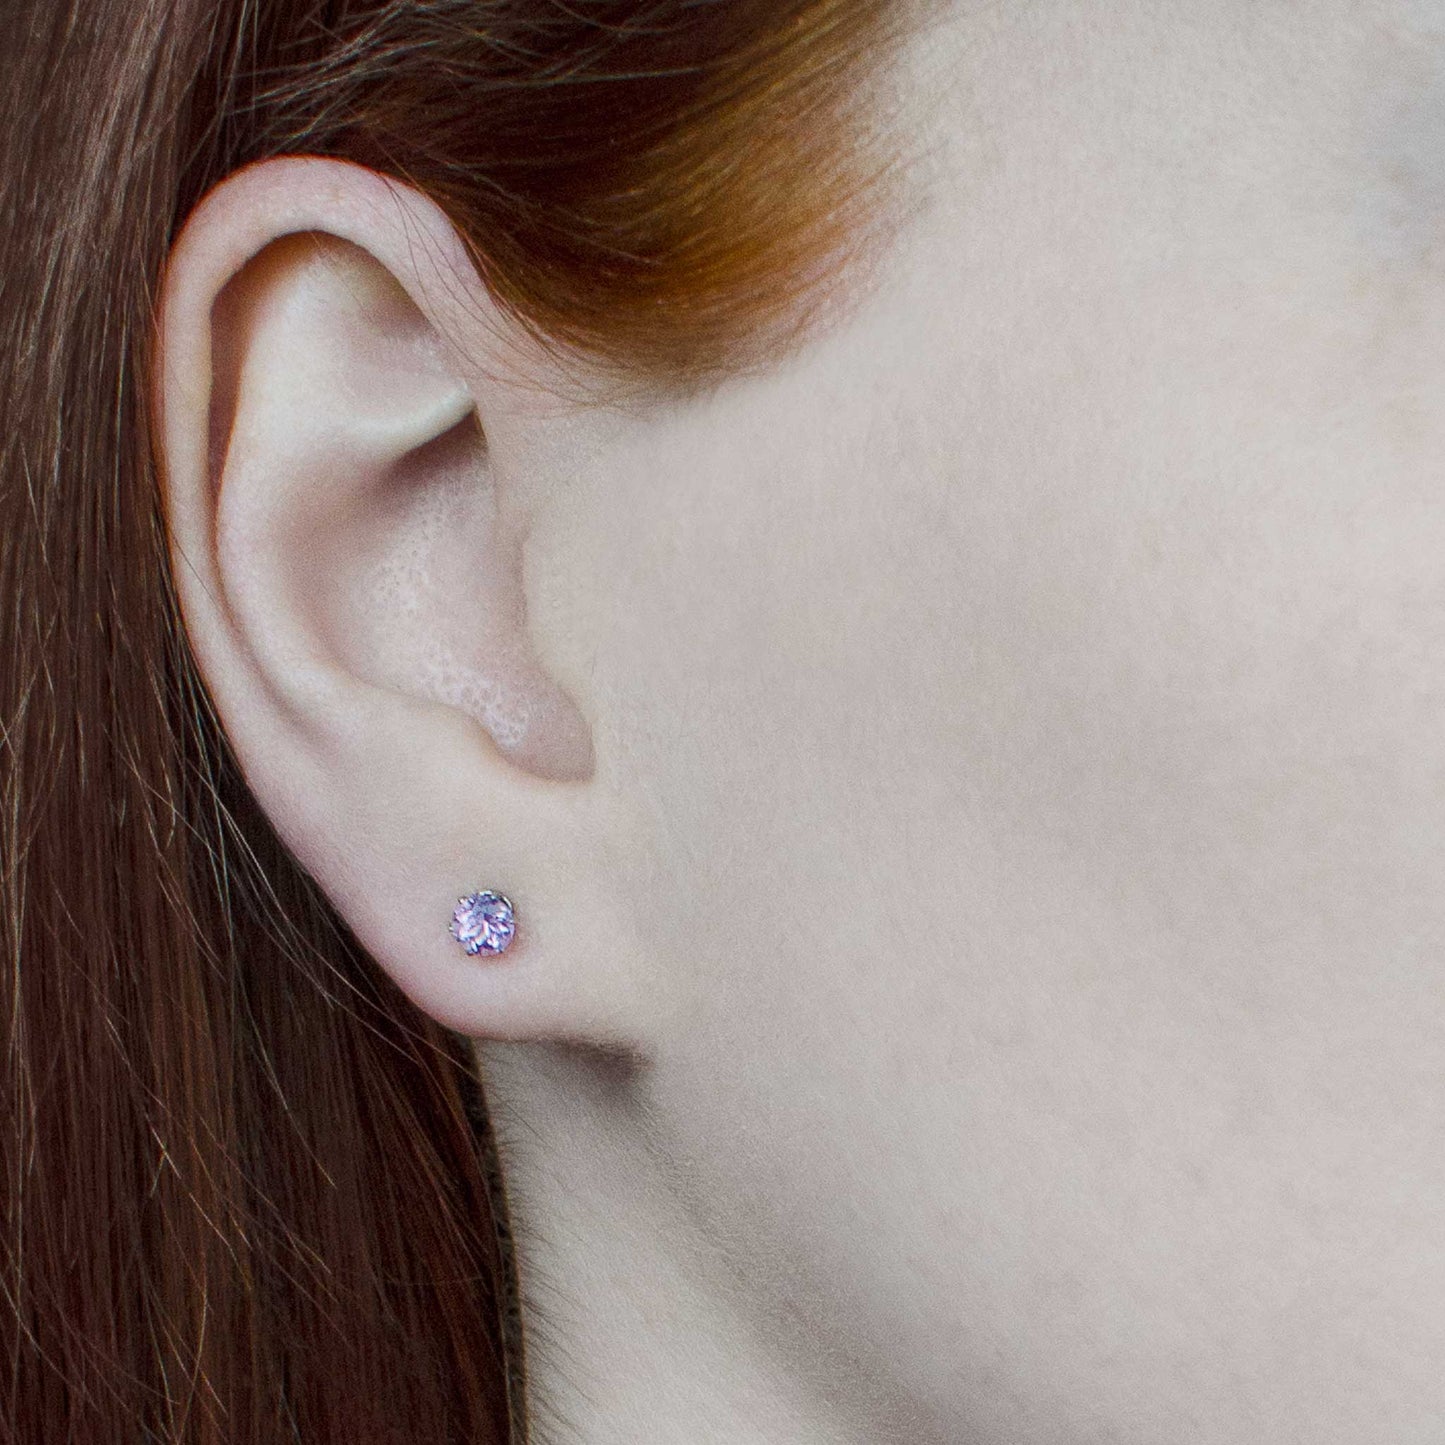 Woman wearing tiny purple Amethyst stud earrings in earlobe